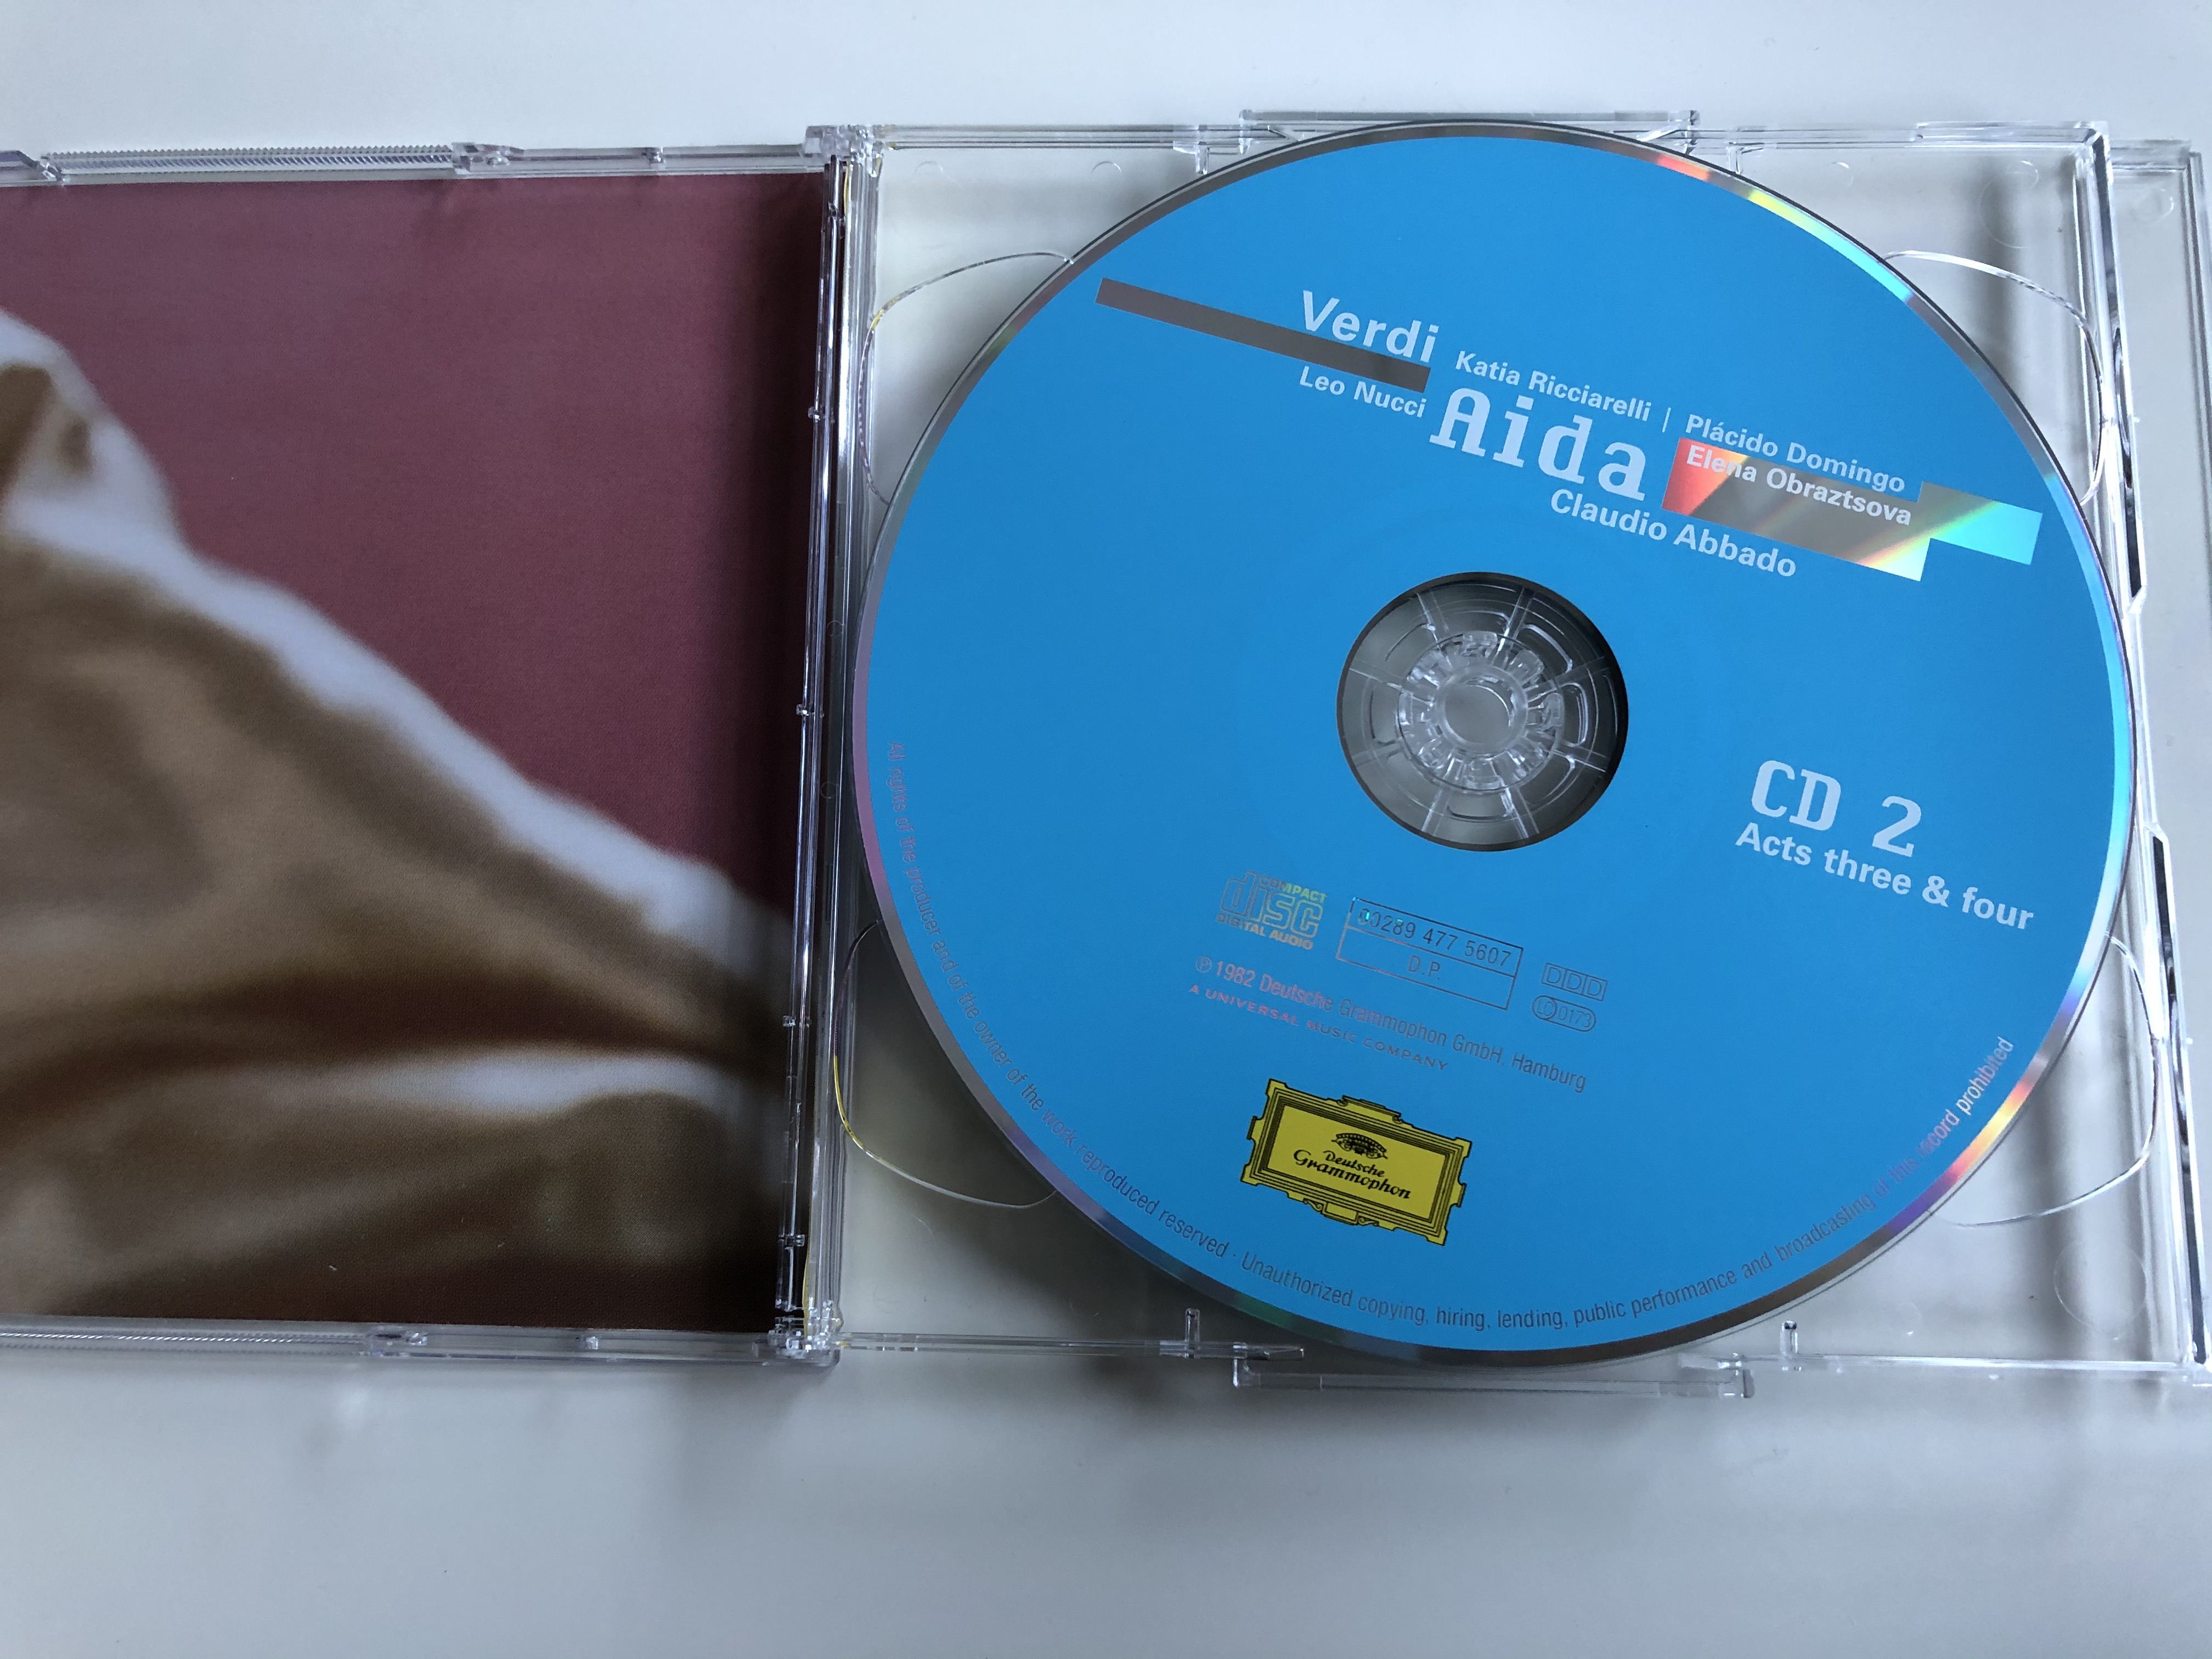 verdi-katia-ricciarelli-placido-domingo-leo-nucci-elena-obraztsova-claudio-abbado-aida-opera-house-deutsche-grammophon-2x-audio-cd-2005-00289-477-5605-3-.jpg